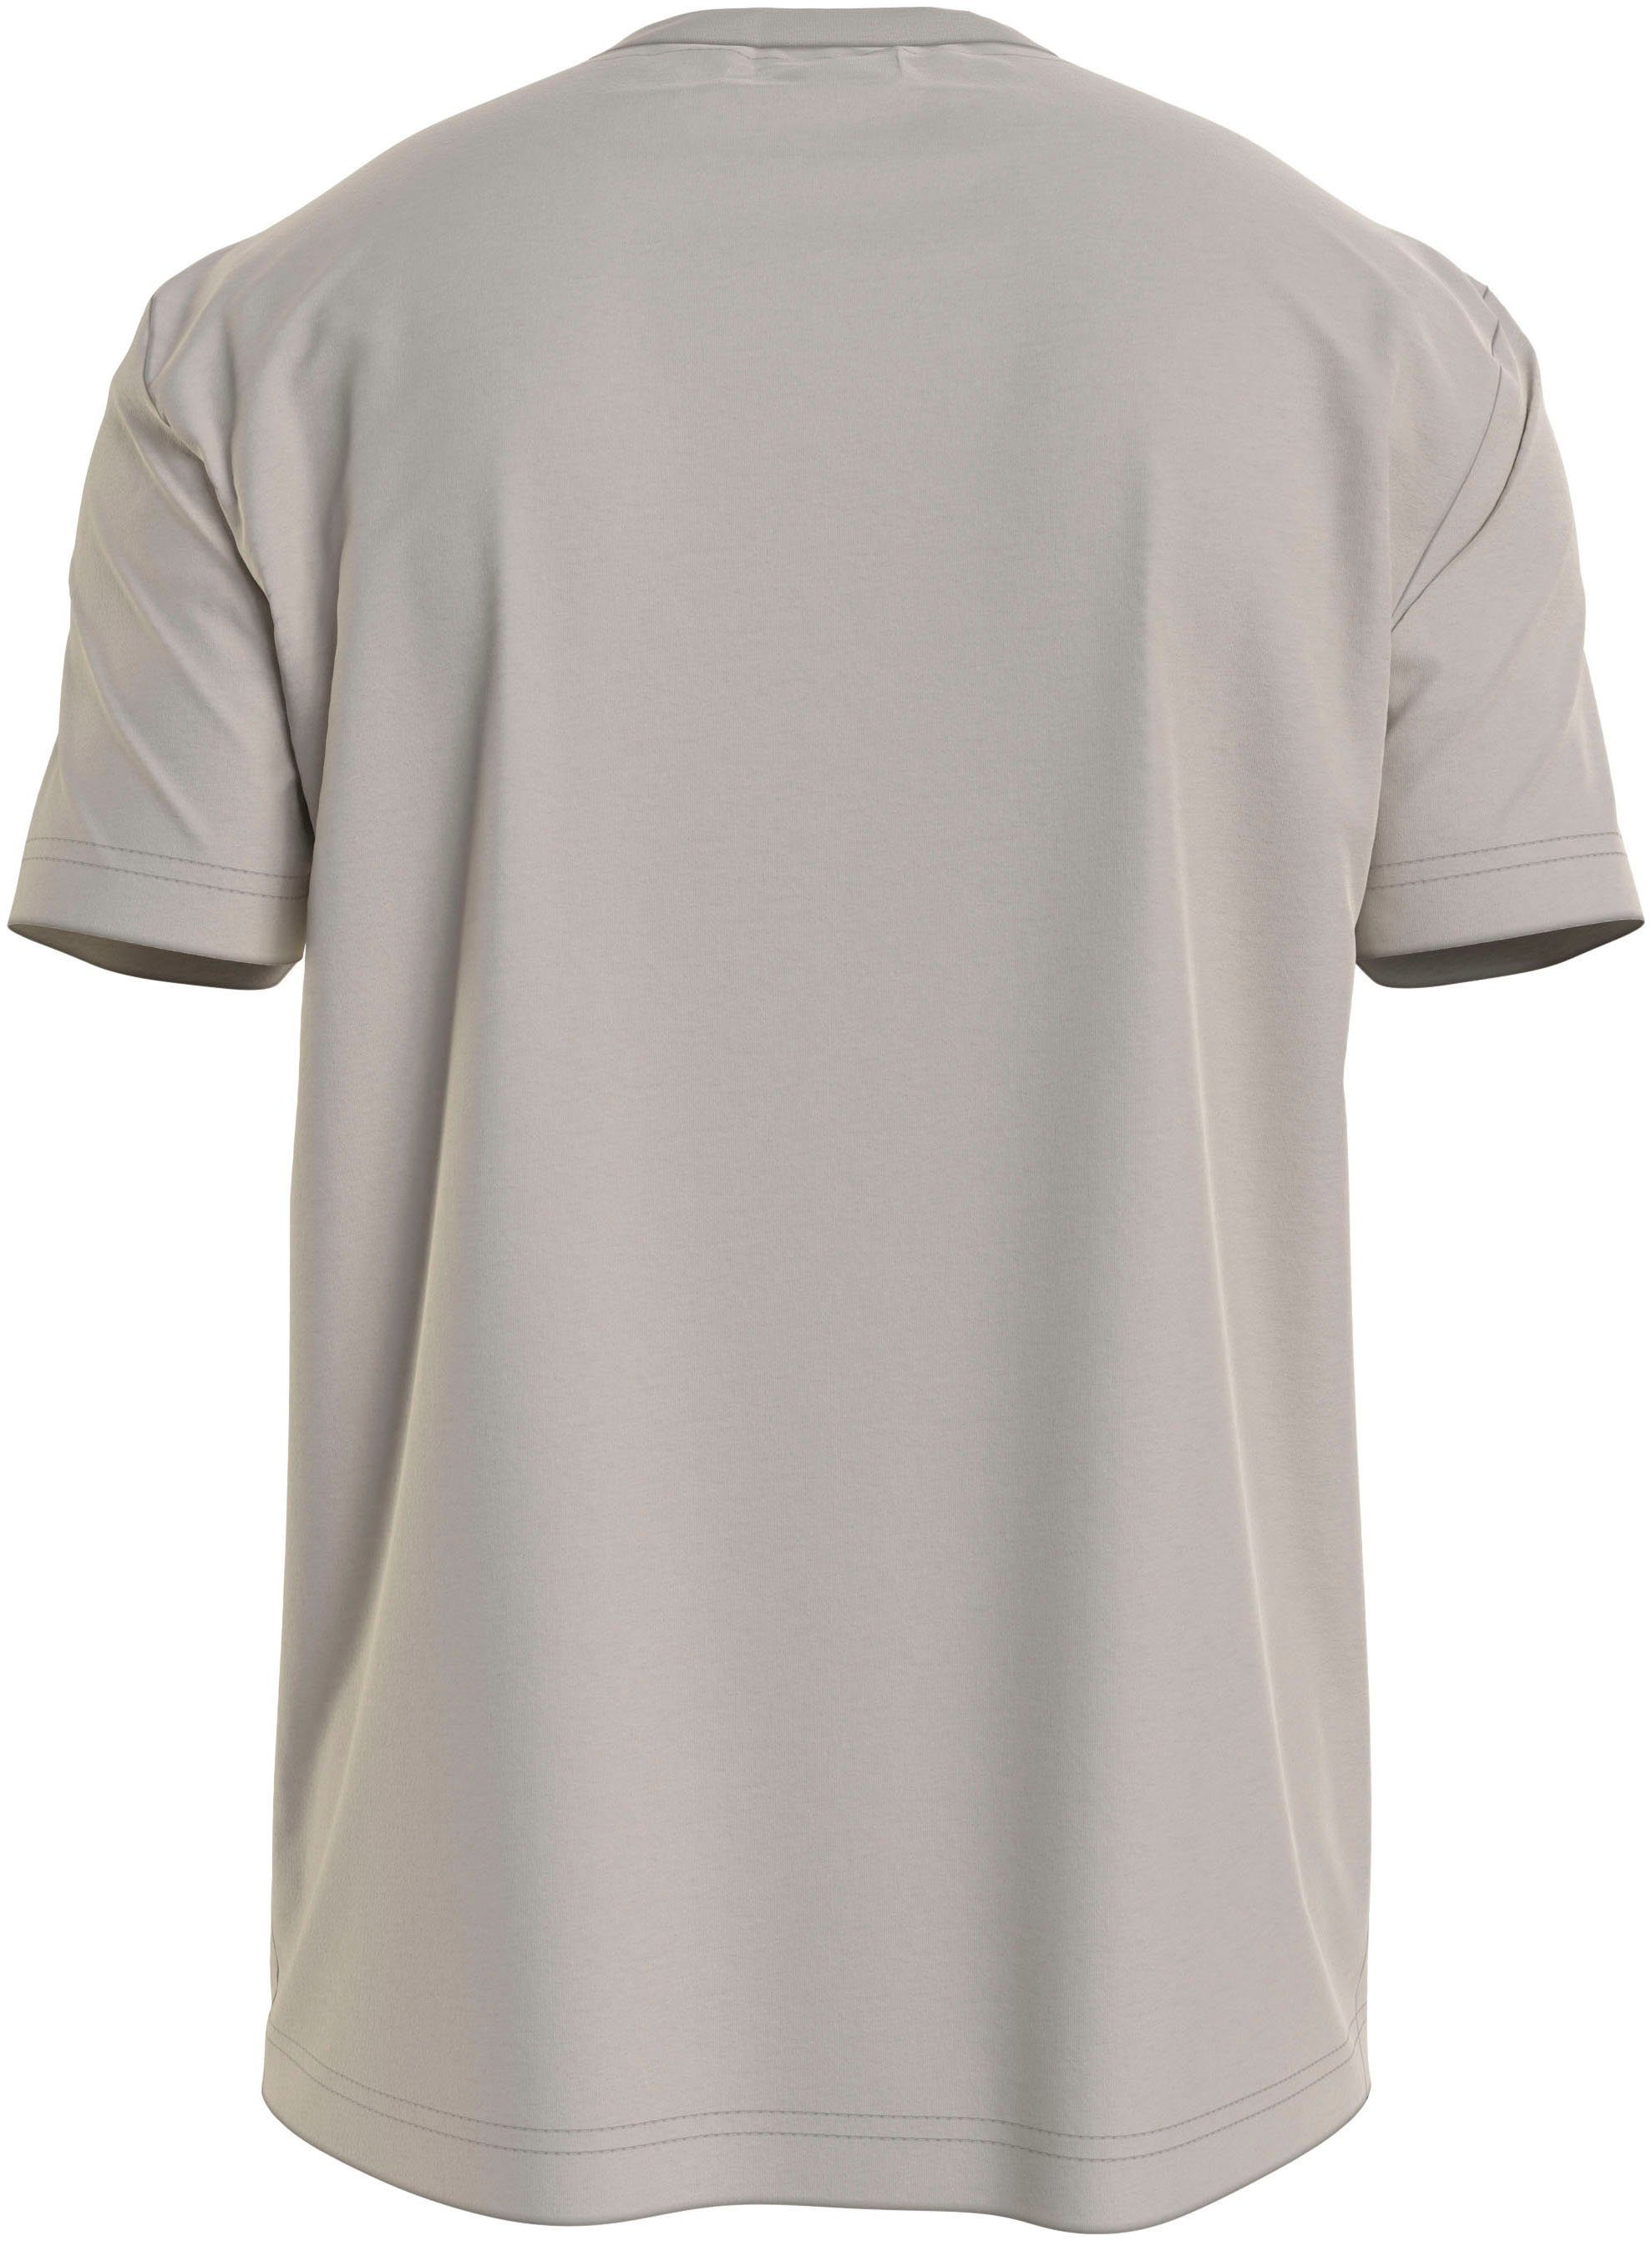 Calvin Klein T-Shirt HERO Beige Markenlabel aufgedrucktem LOGO COMFORT T-SHIRT mit Stony